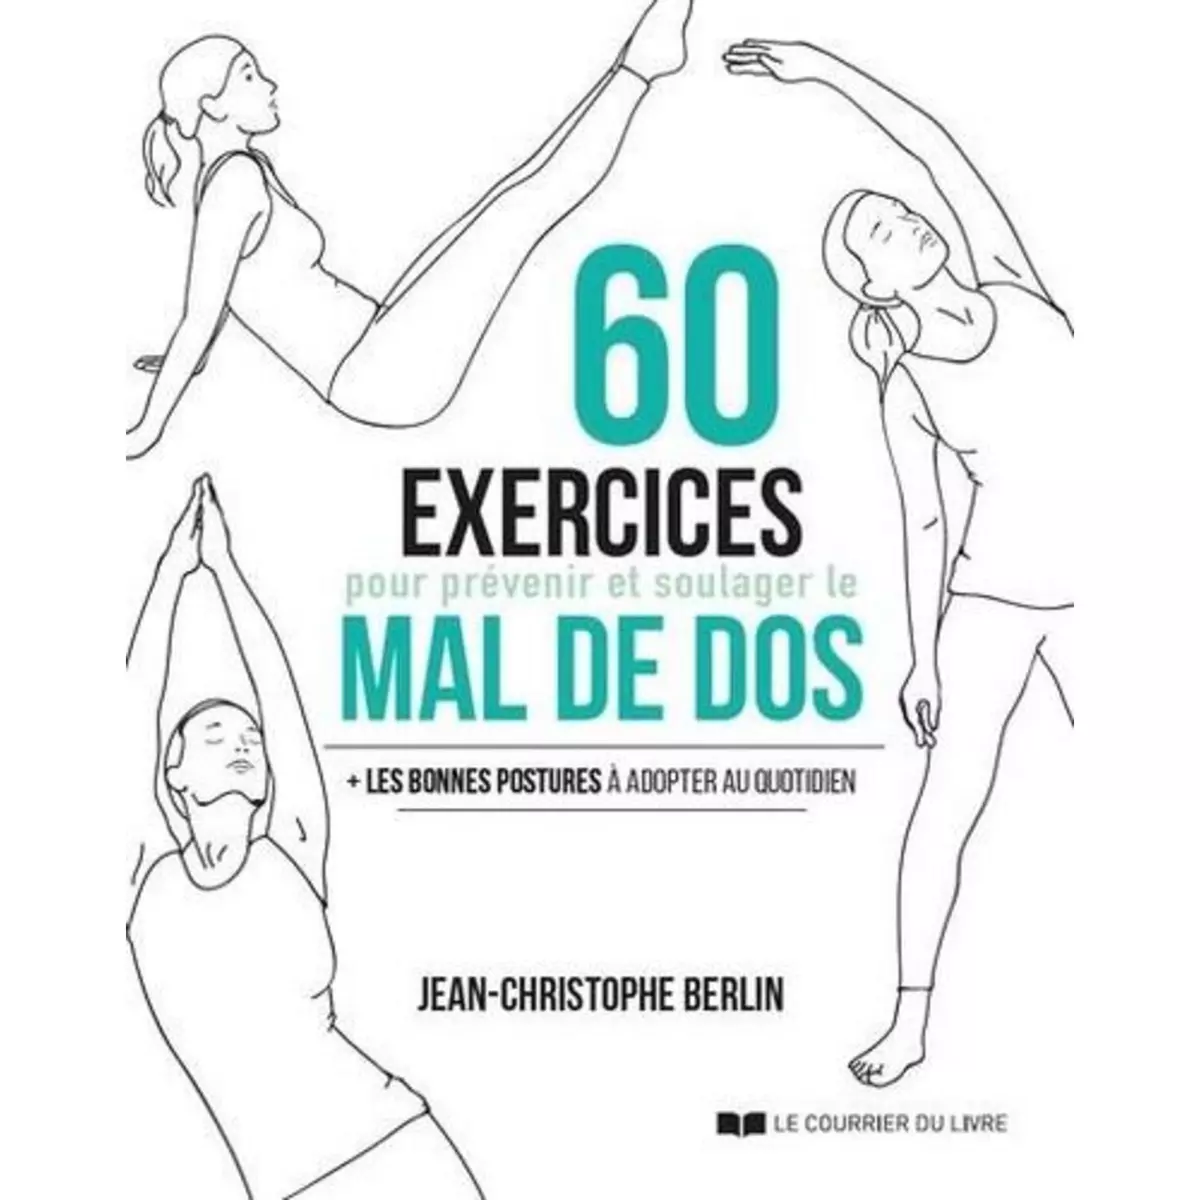  60 EXERCICES POUR PREVENIR ET SOULAGER LE MAL DE DOS. + LES BONNES POSTURES A ADOPTER AU QUOTIDIEN, Berlin Jean-Christophe